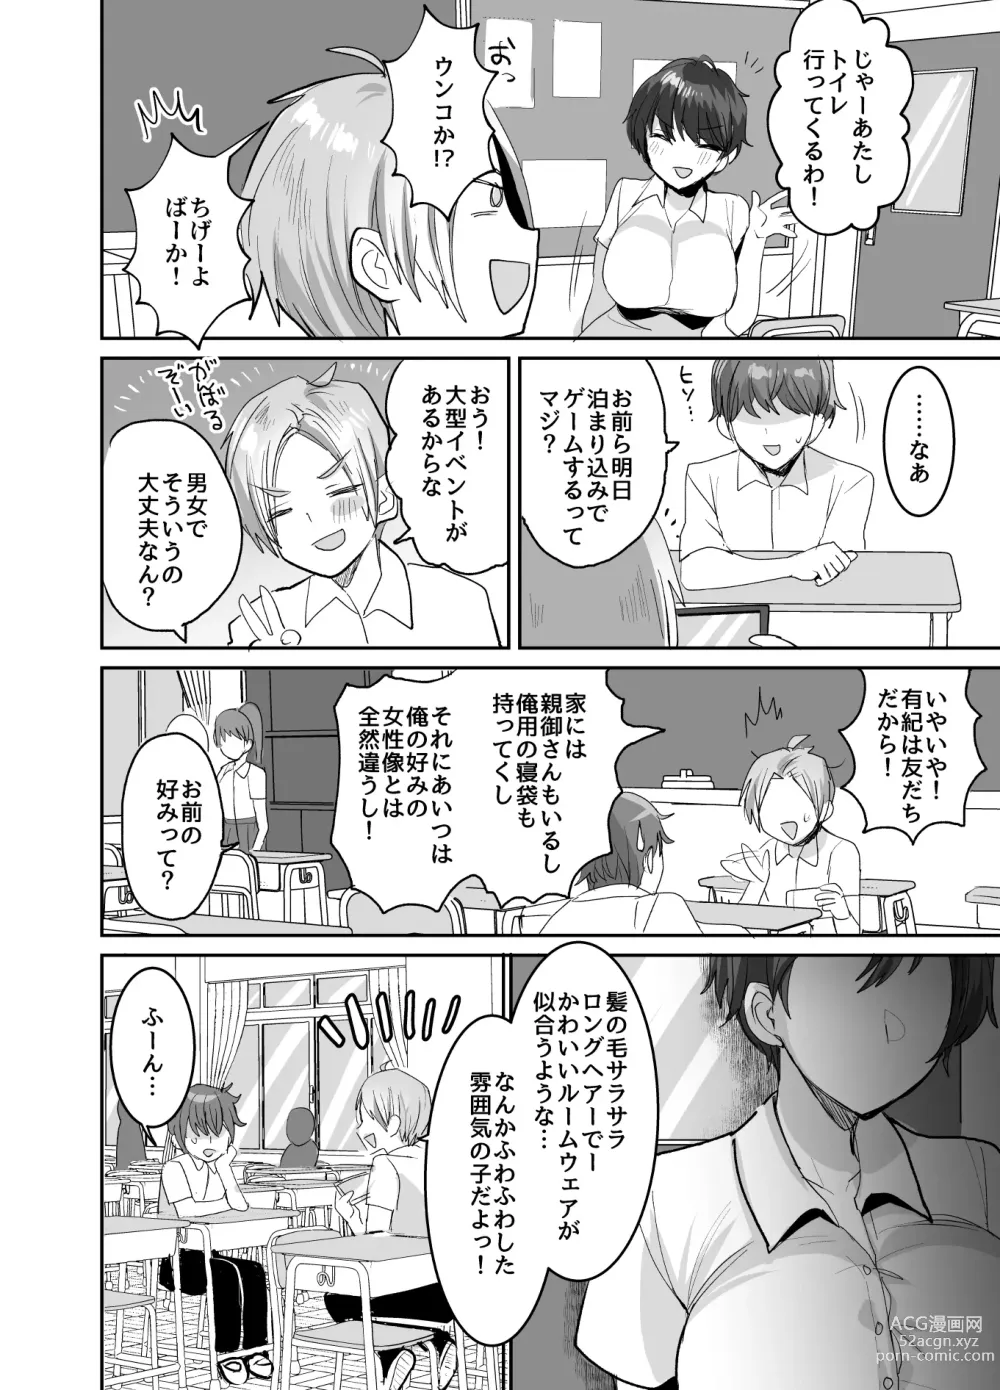 Page 10 of doujinshi Tomodachidamonne? ~Kyonyuonnatomodachini semararete asamade gachi namakoubi!~